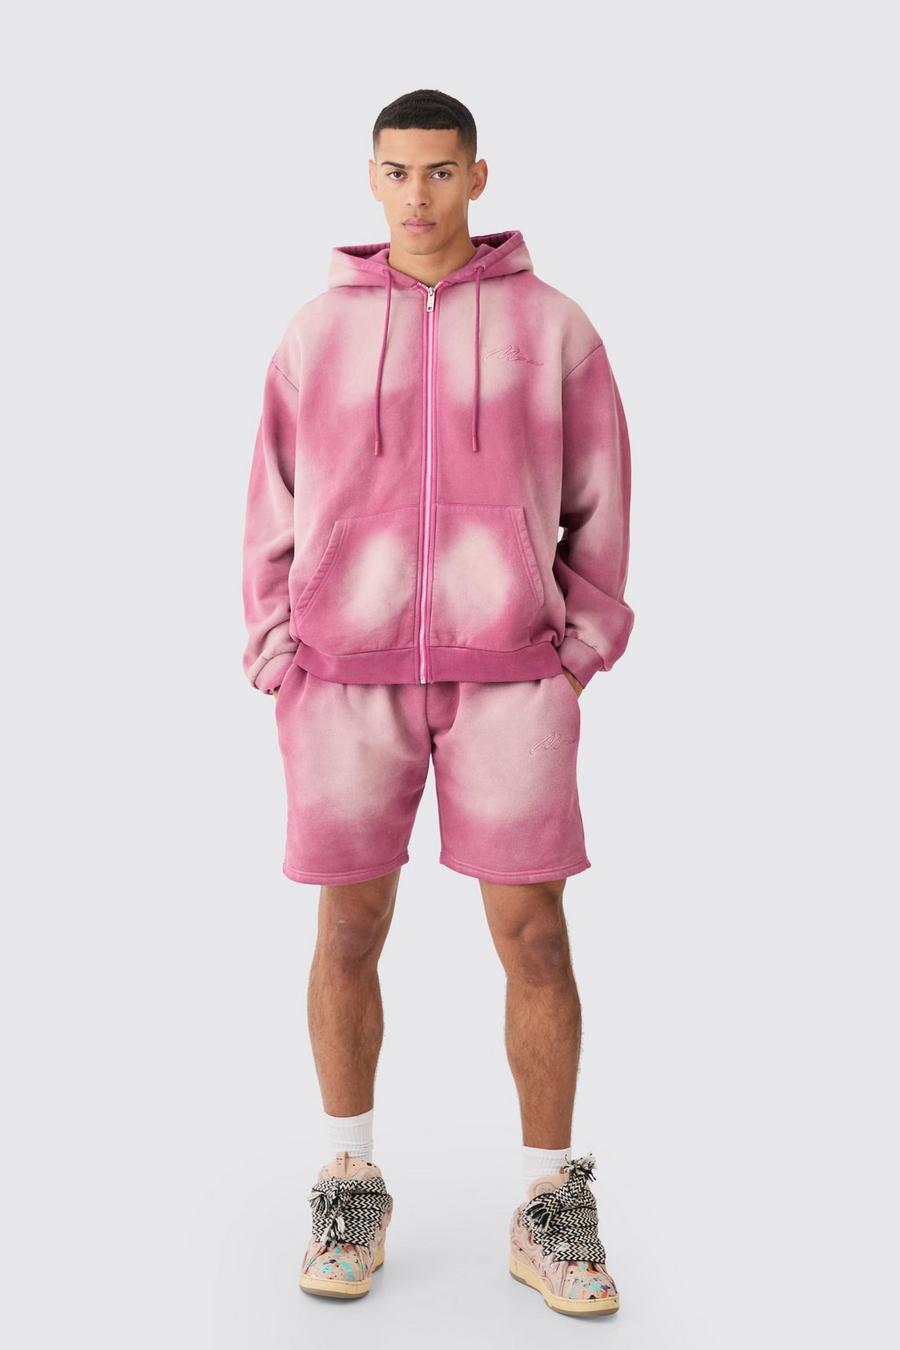 Survêtement oversize zippé avec short - MAN, Pink